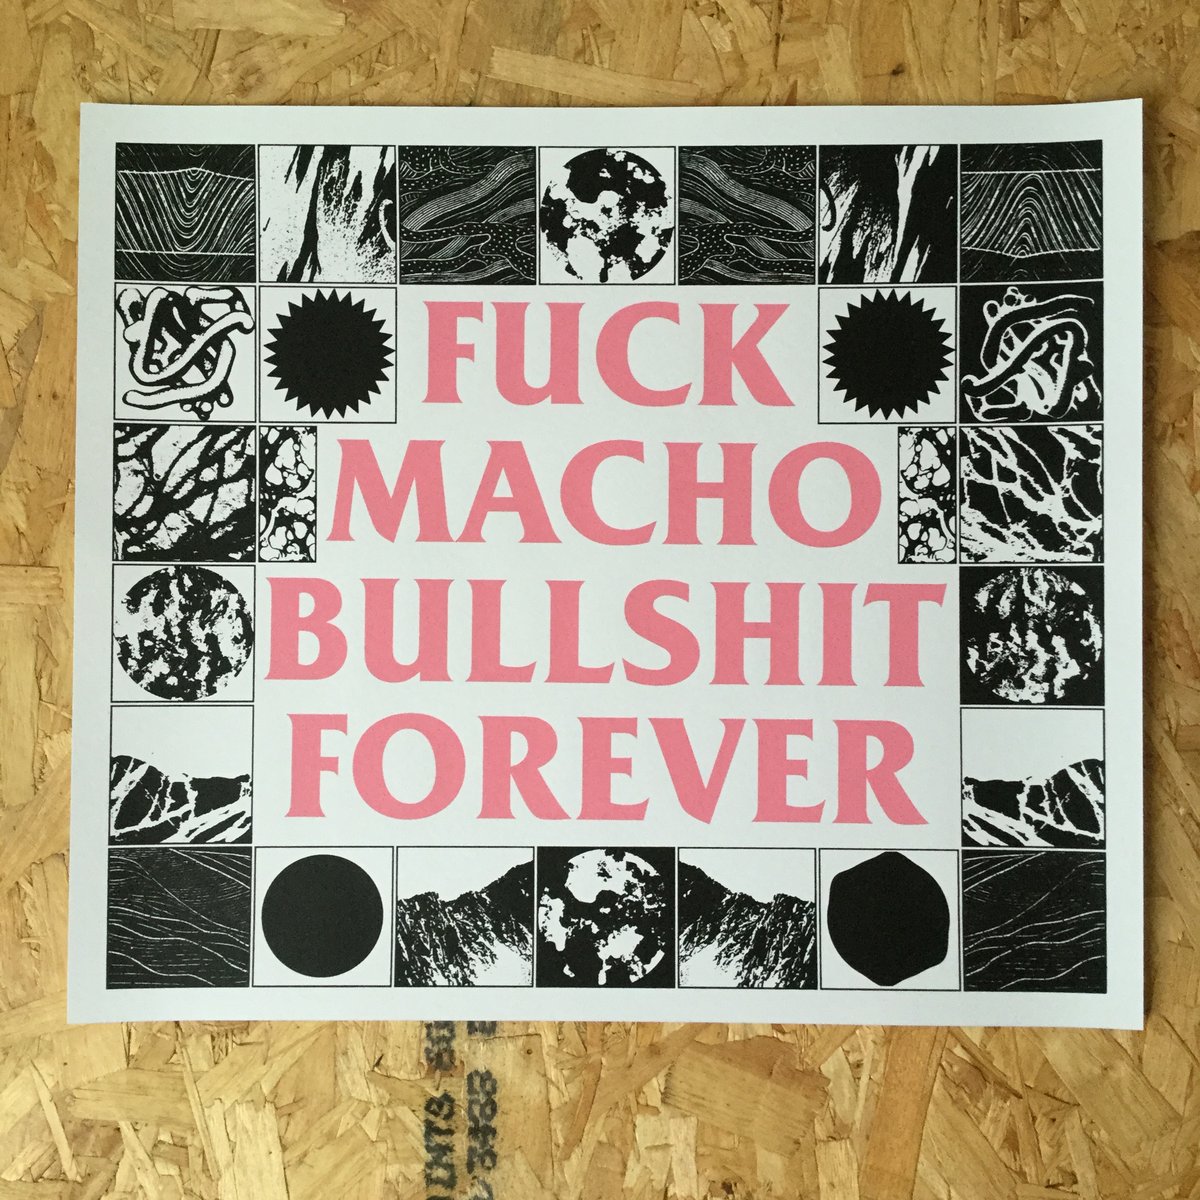 Image of Fuck Macho Bullshit Forever large screen print